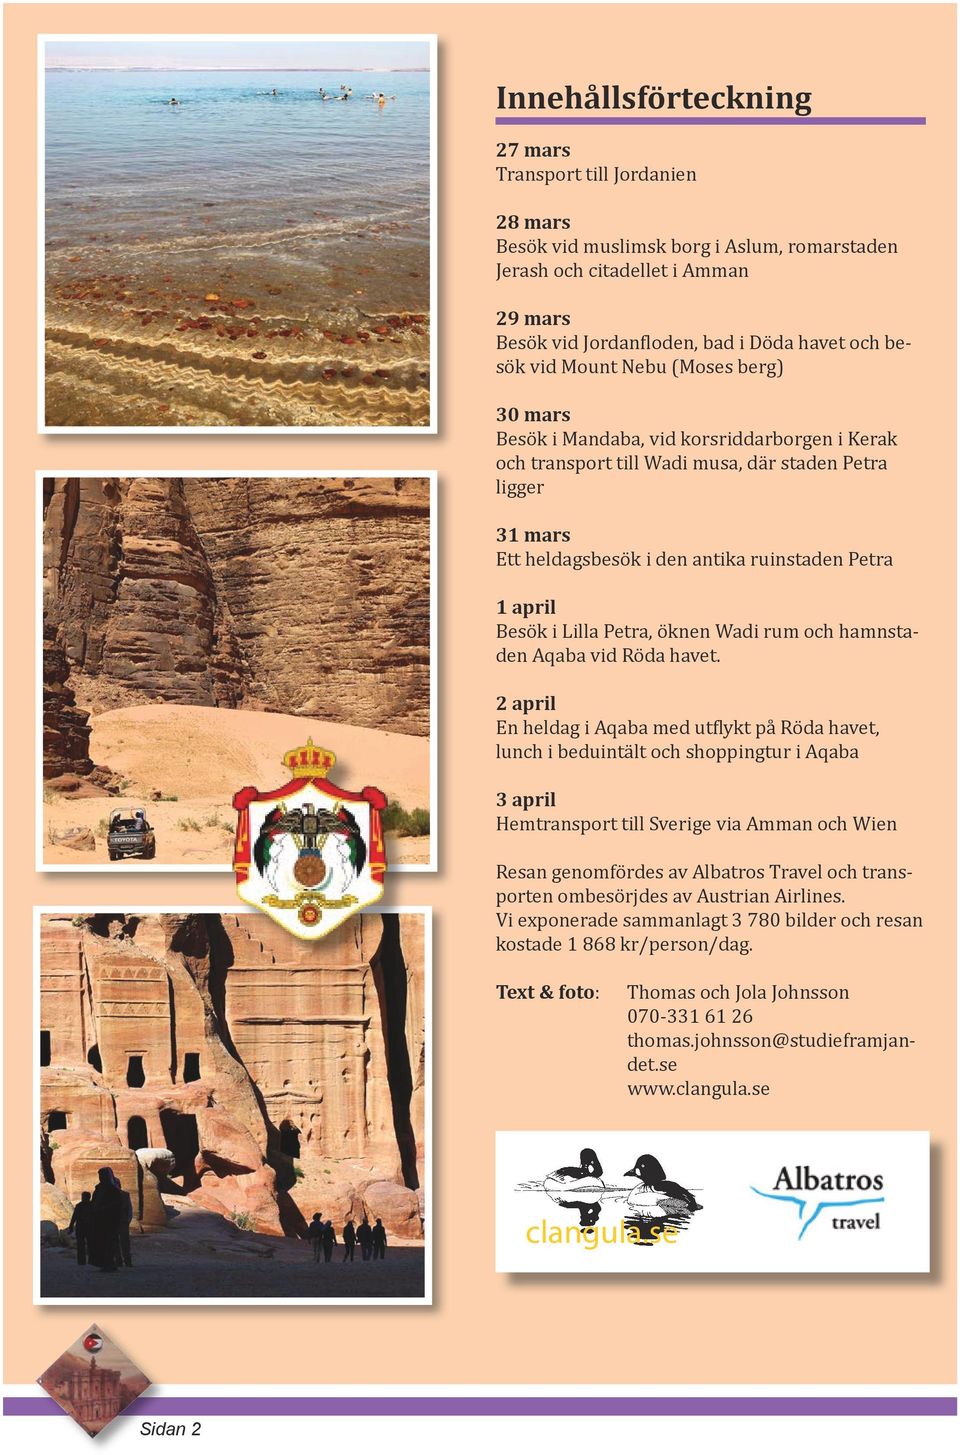 Besök i Lilla Petra, öknen Wadi rum och hamnstaden Aqaba vid Röda havet.